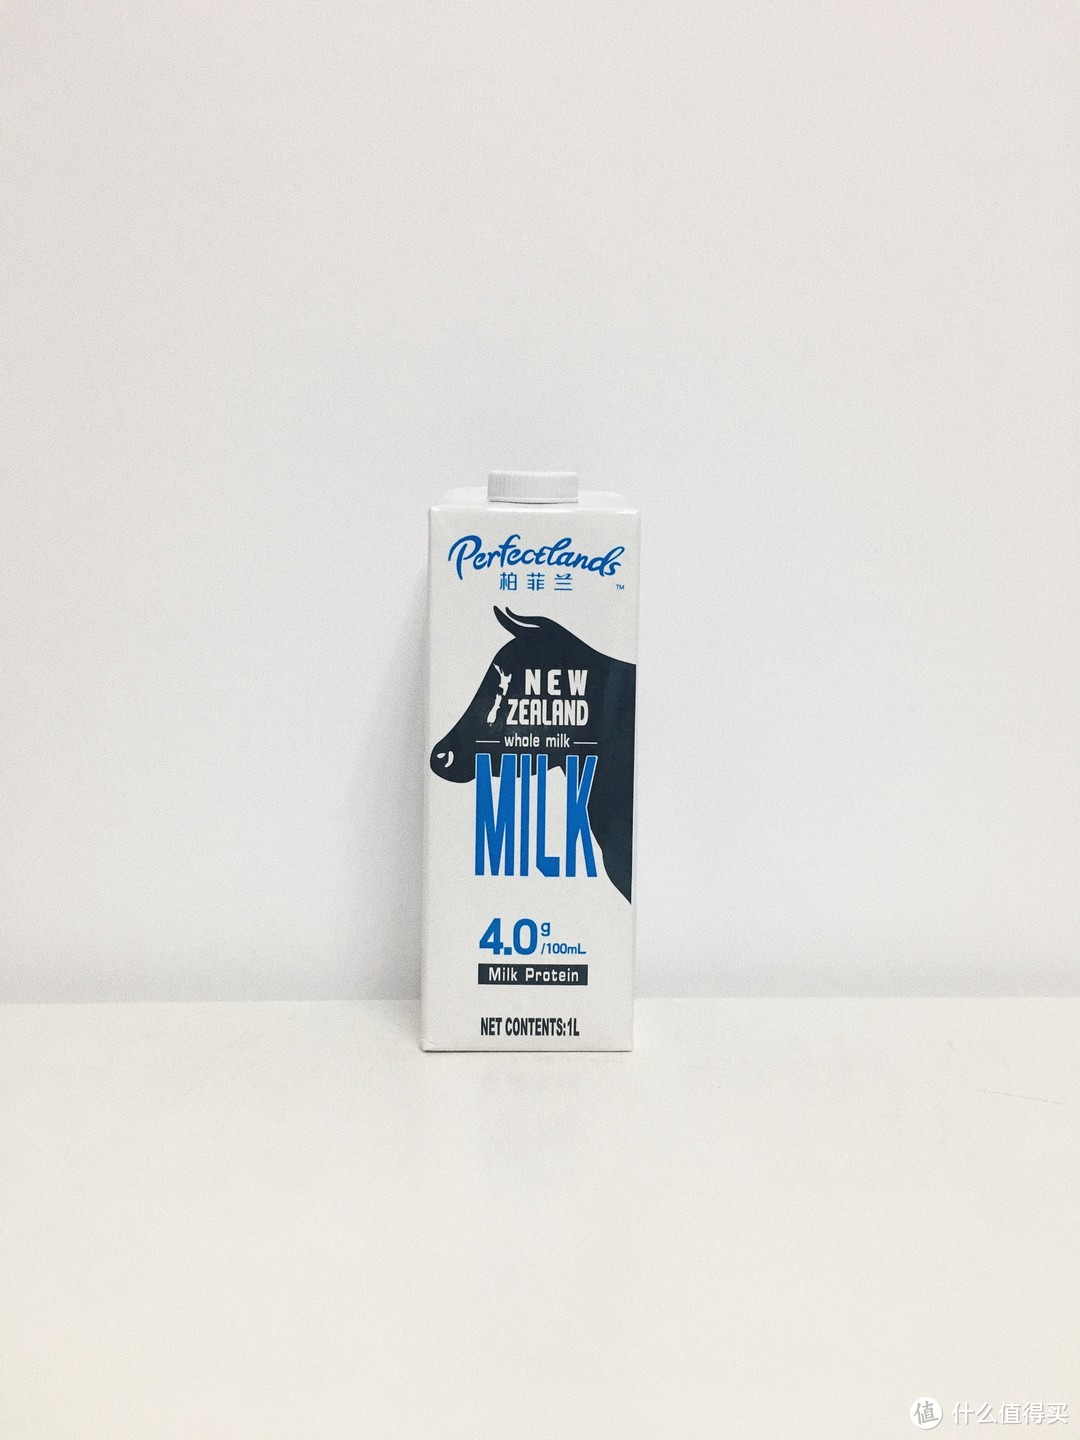 来自新西兰坎特伯雷的原生营养——Perfectlands柏菲兰 新西兰纯牛奶轻众测报告